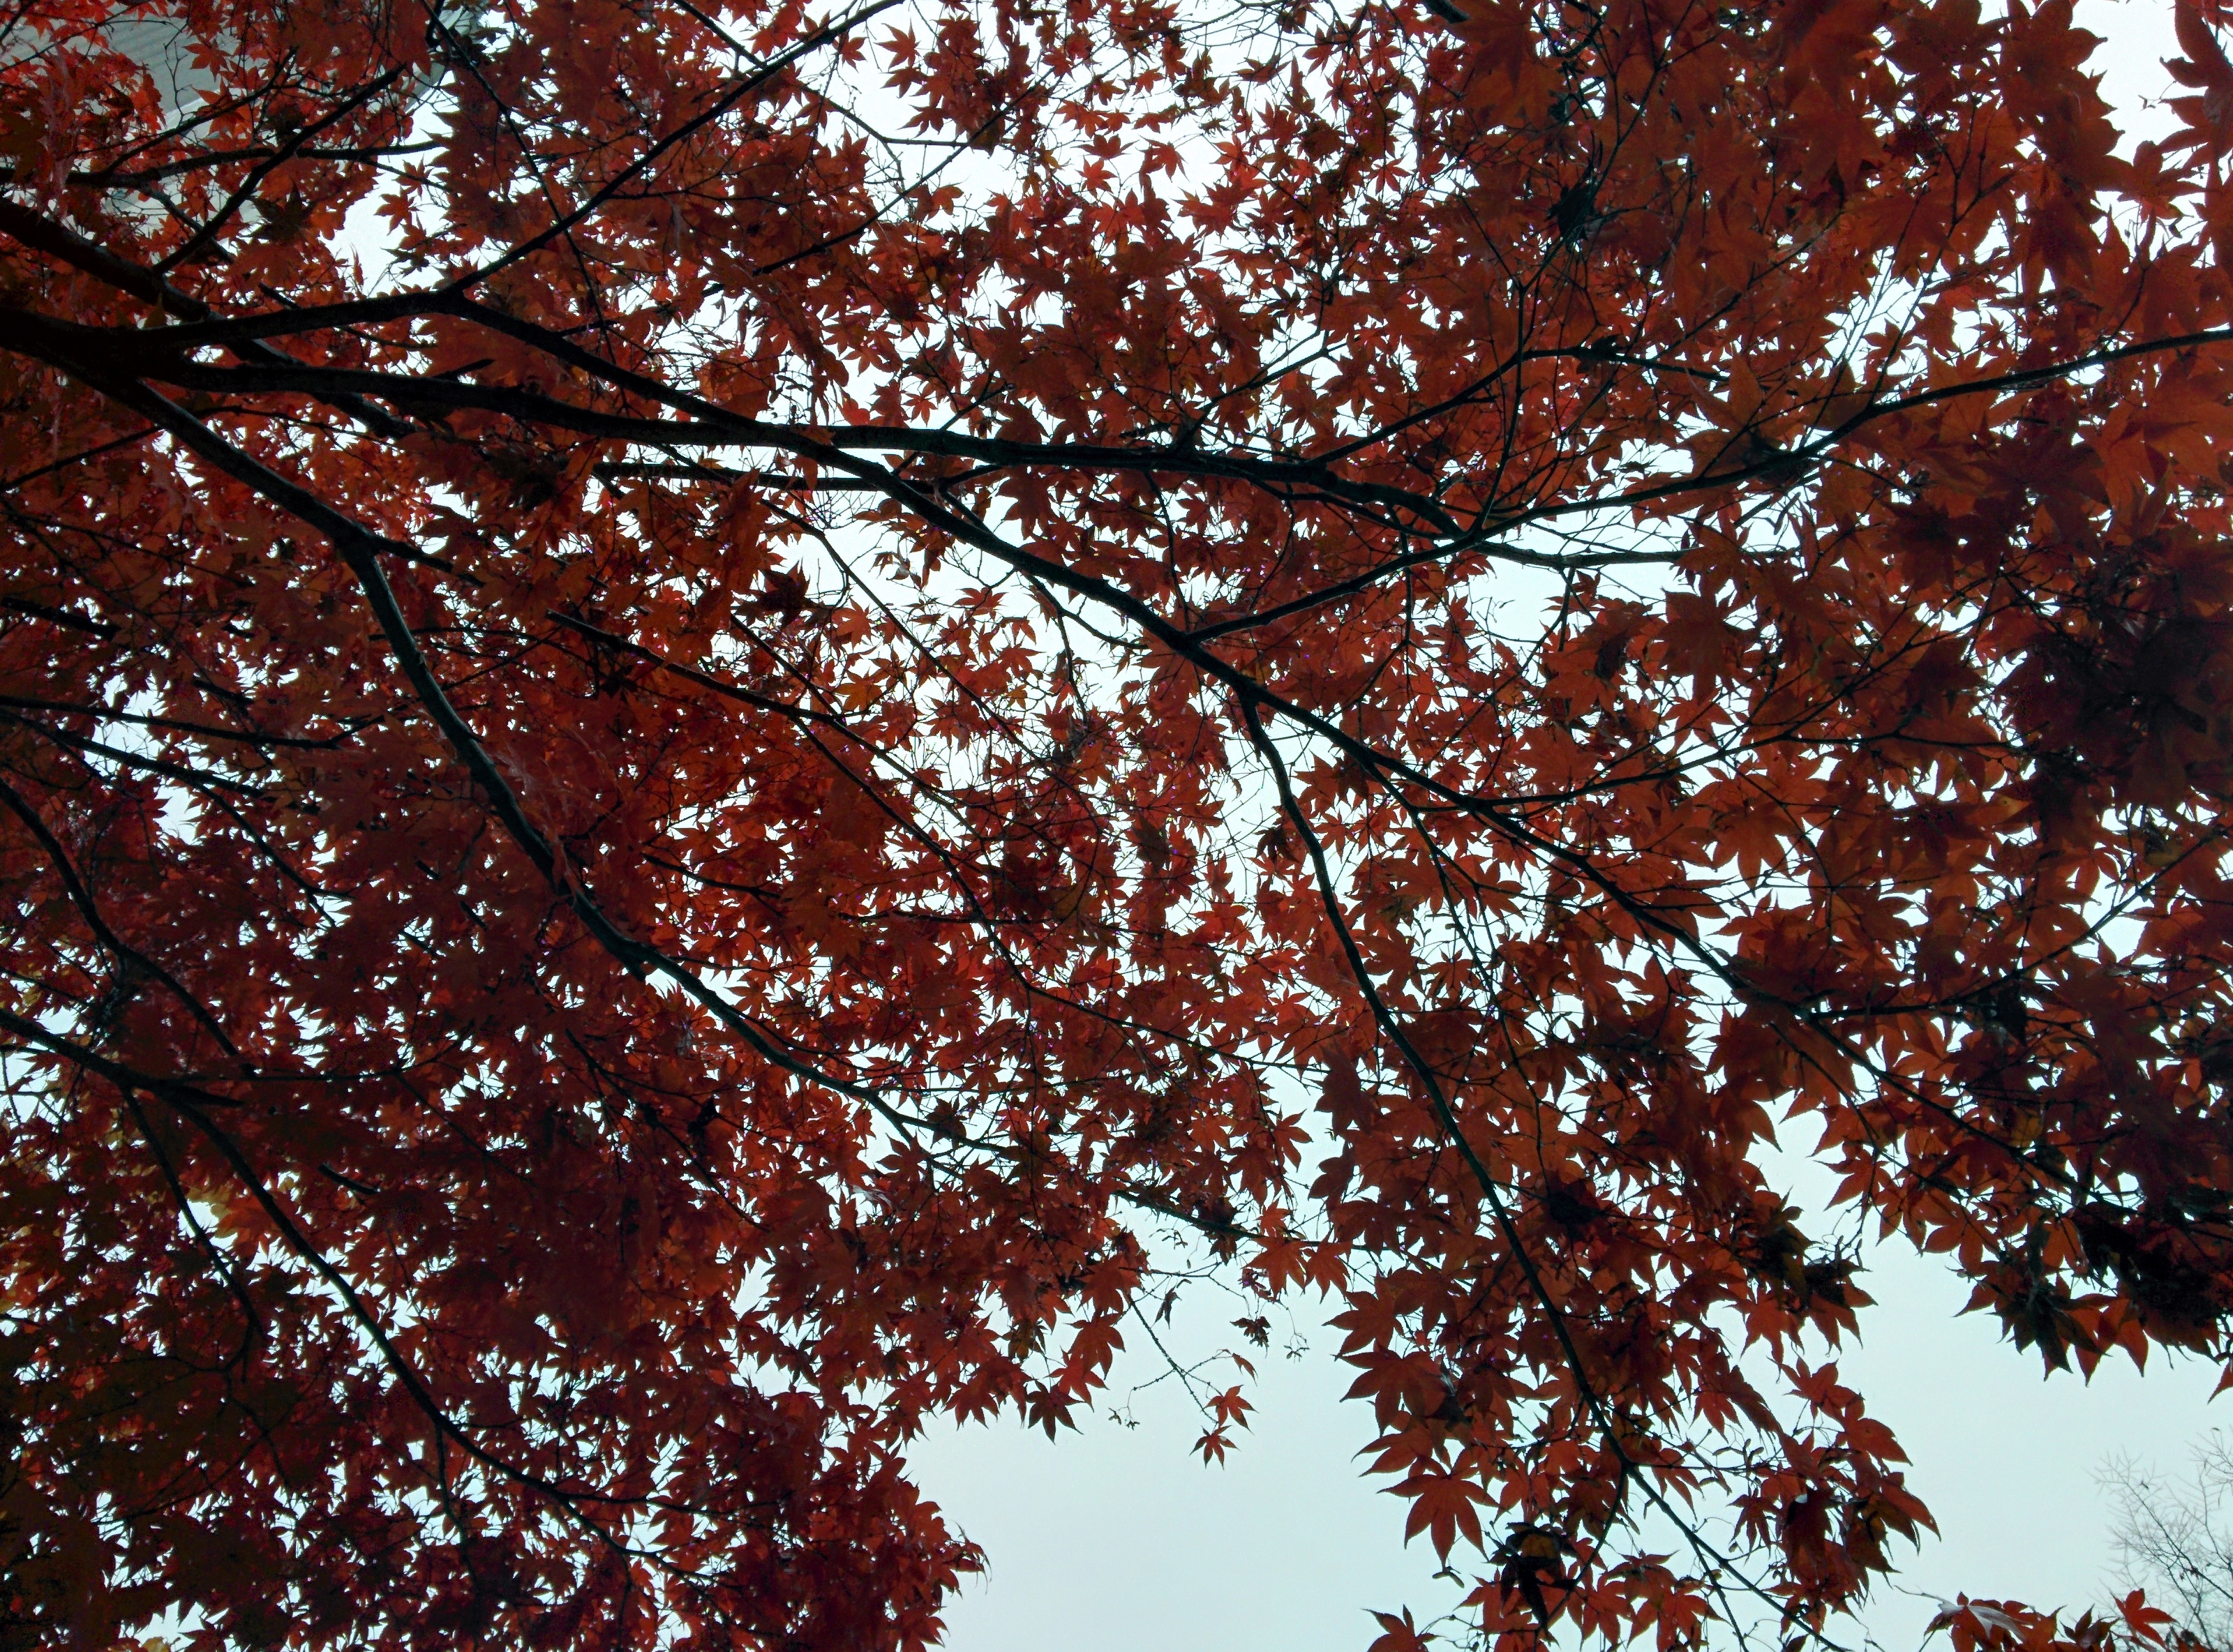 IMG_20151108_125945.jpg 비오는 날 단풍나무의 붉은색 . 단풍(丹楓)